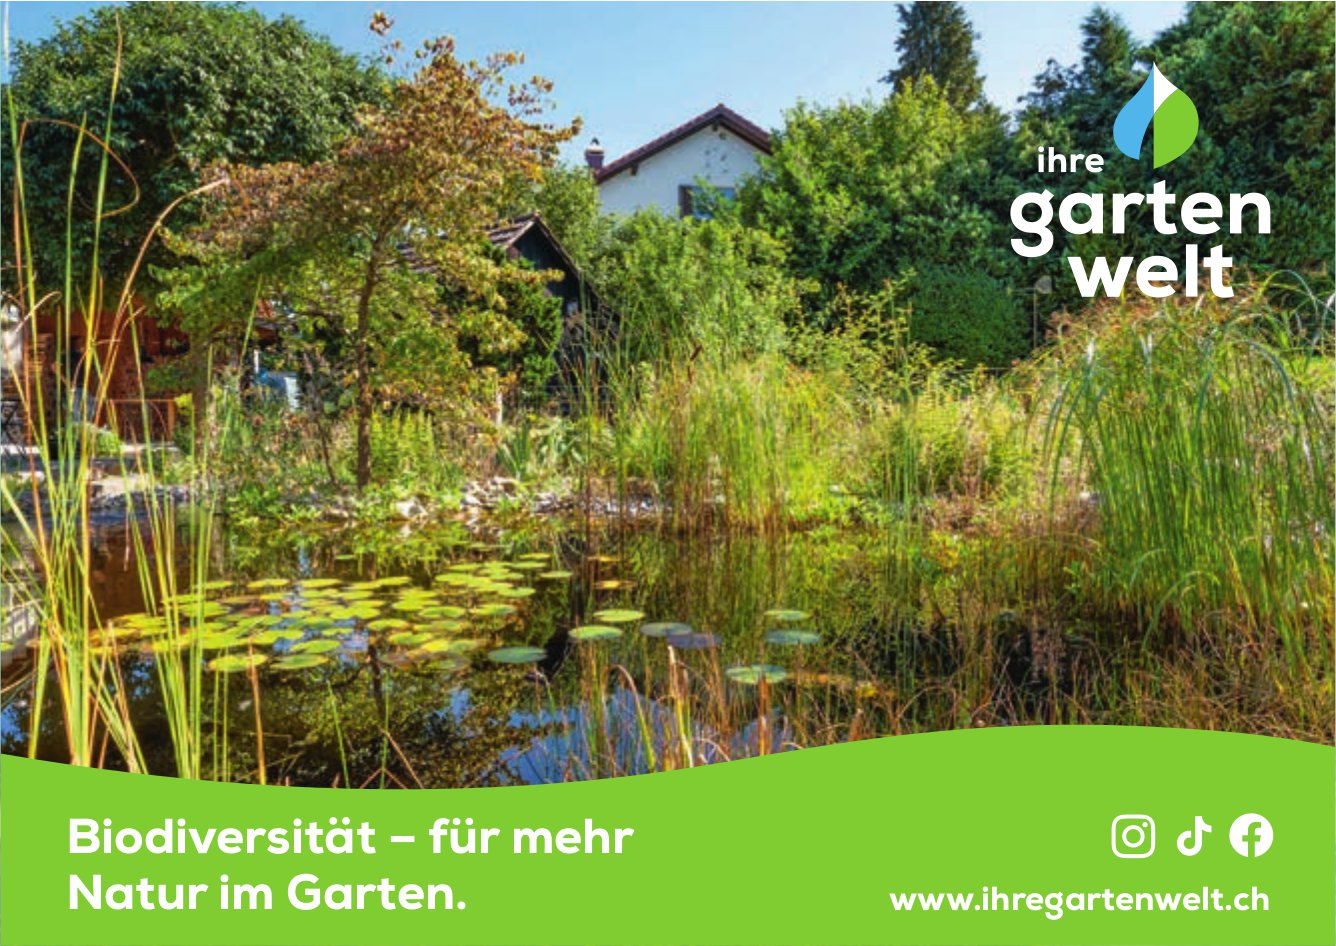 Ihre Gartenwelt - Biodiversität – für mehr Natur im Garten.